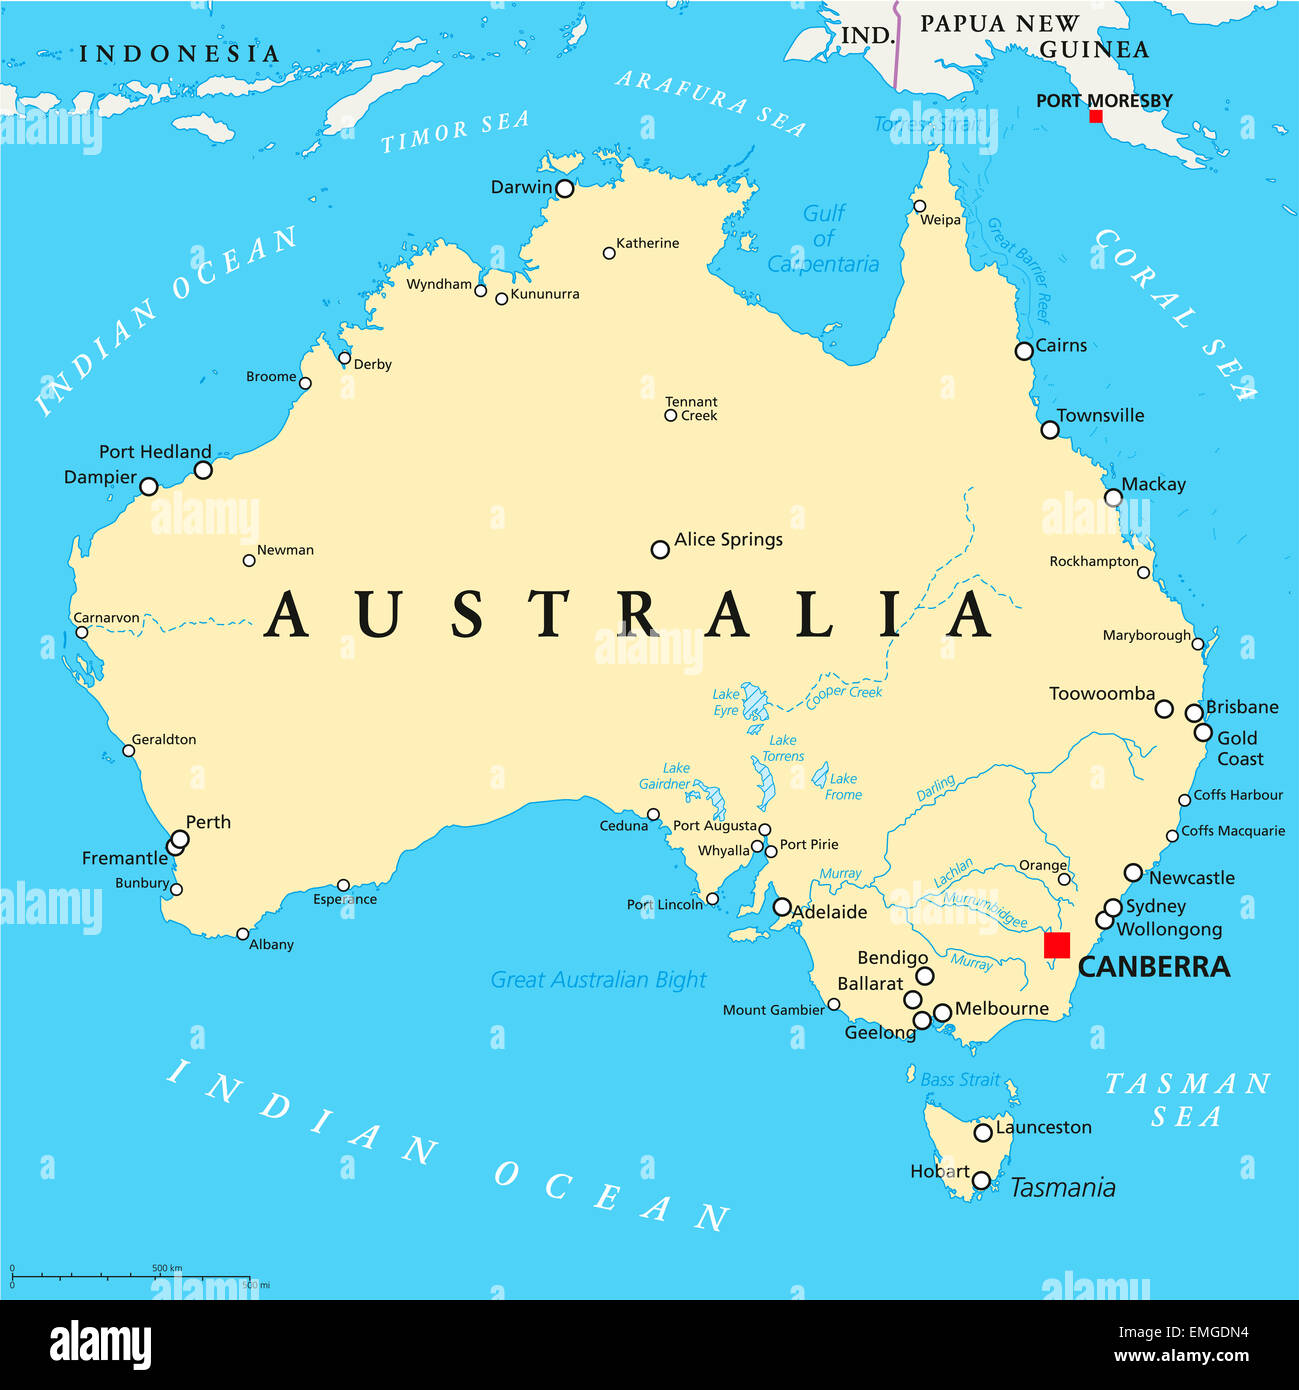 Mapa político de Australia con capital Canberra, las fronteras nacionales, importantes ciudades, ríos y lagos. Rótulos En inglés. Foto de stock